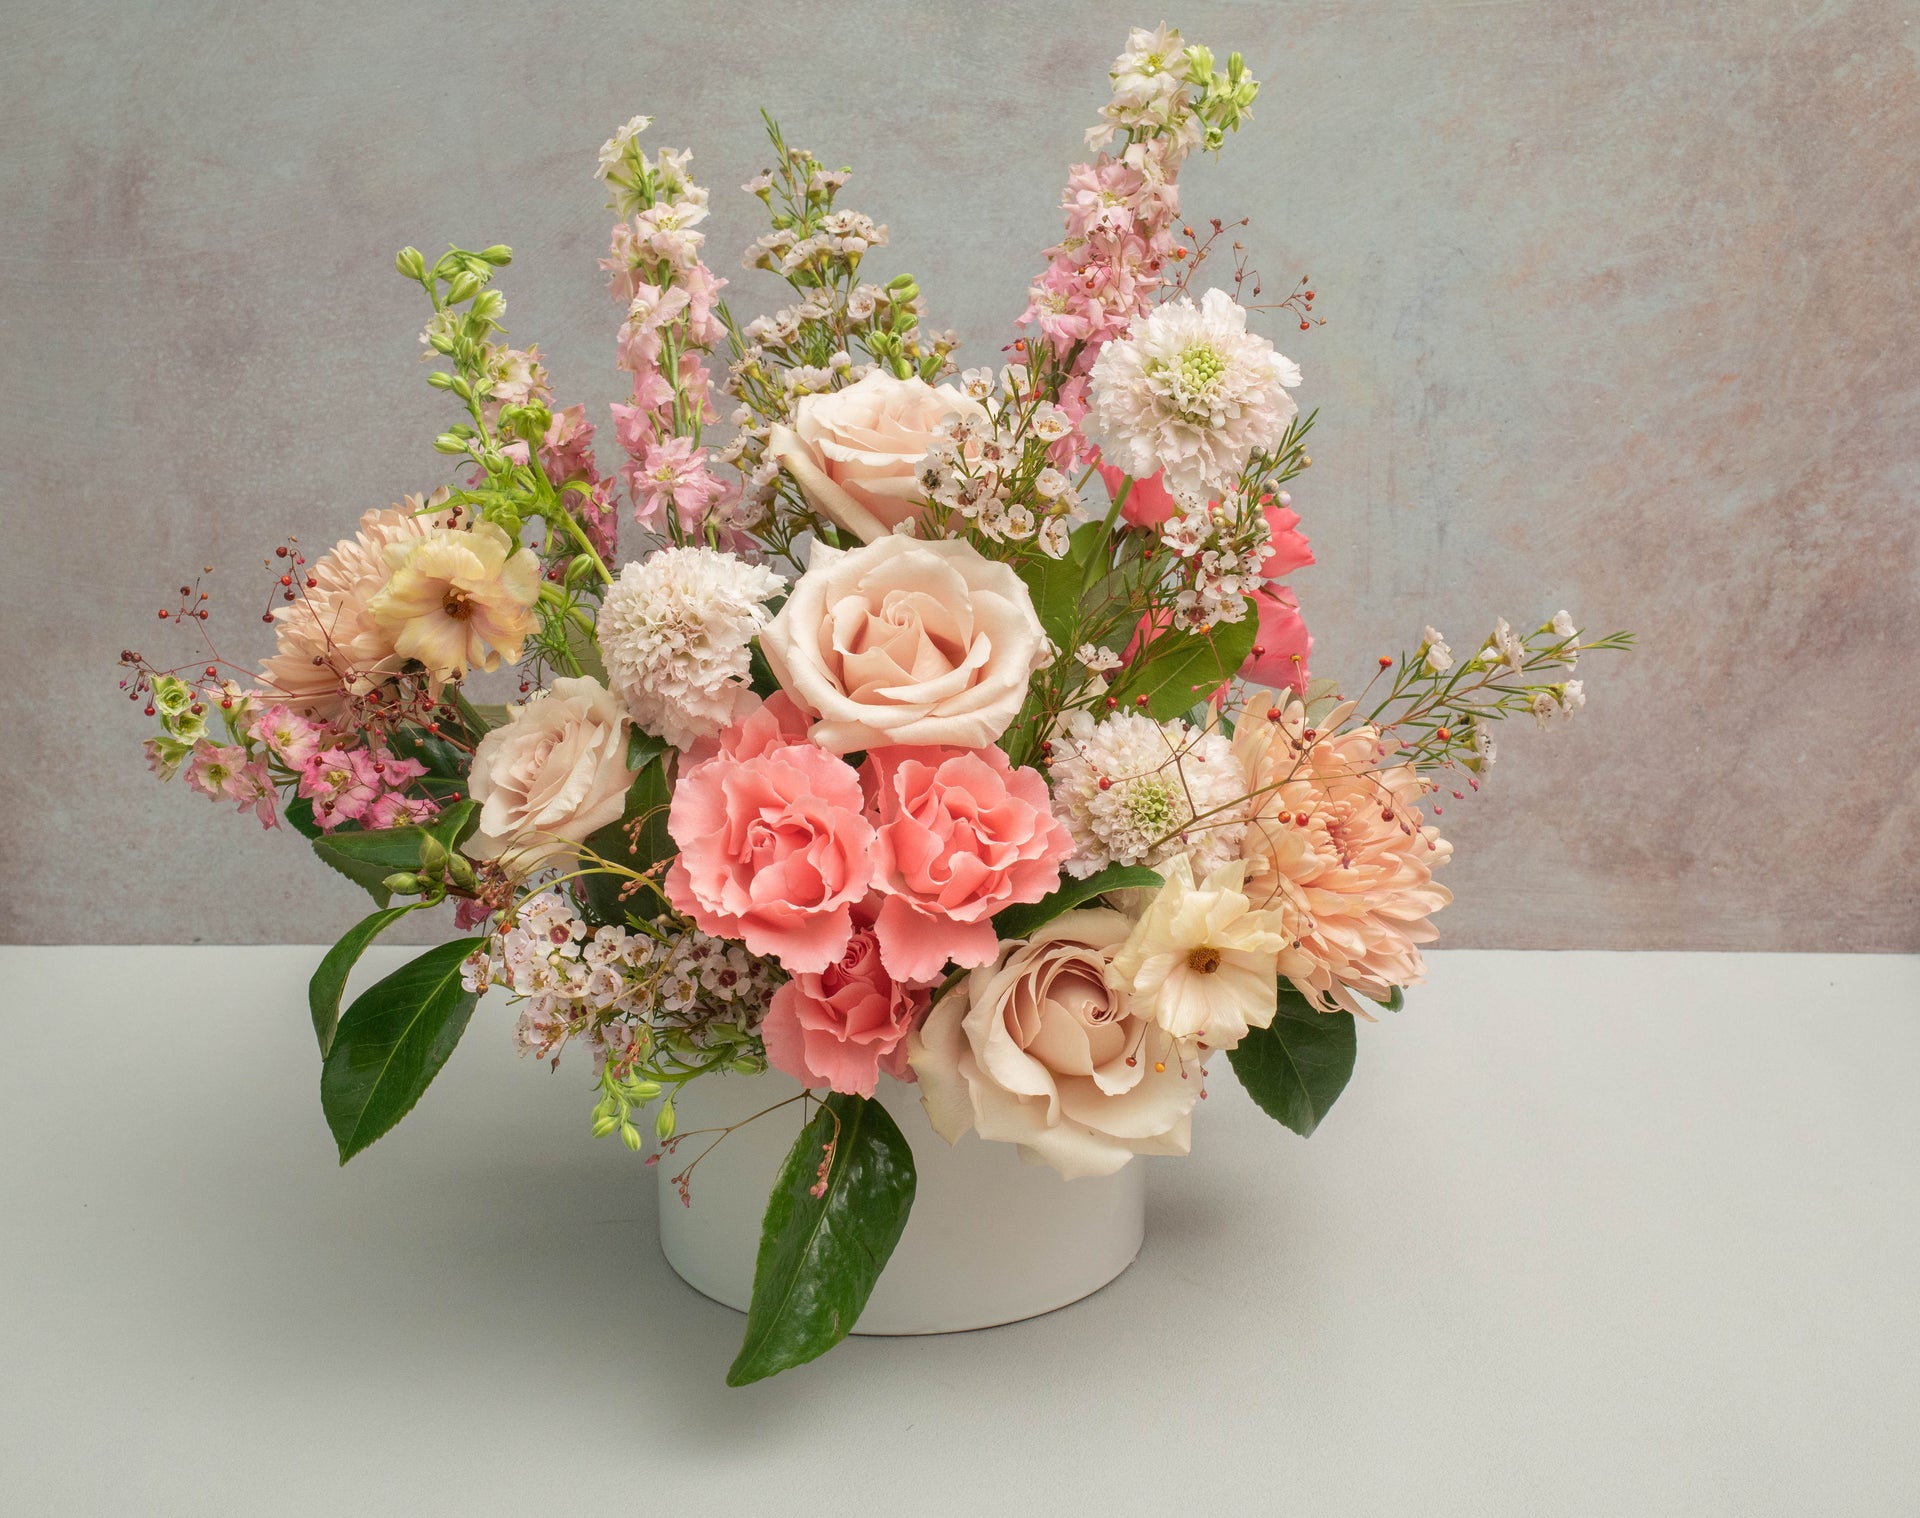 Rosery Flower Shop | Premier Hudson Florist for Bouquets & Arrangement ...